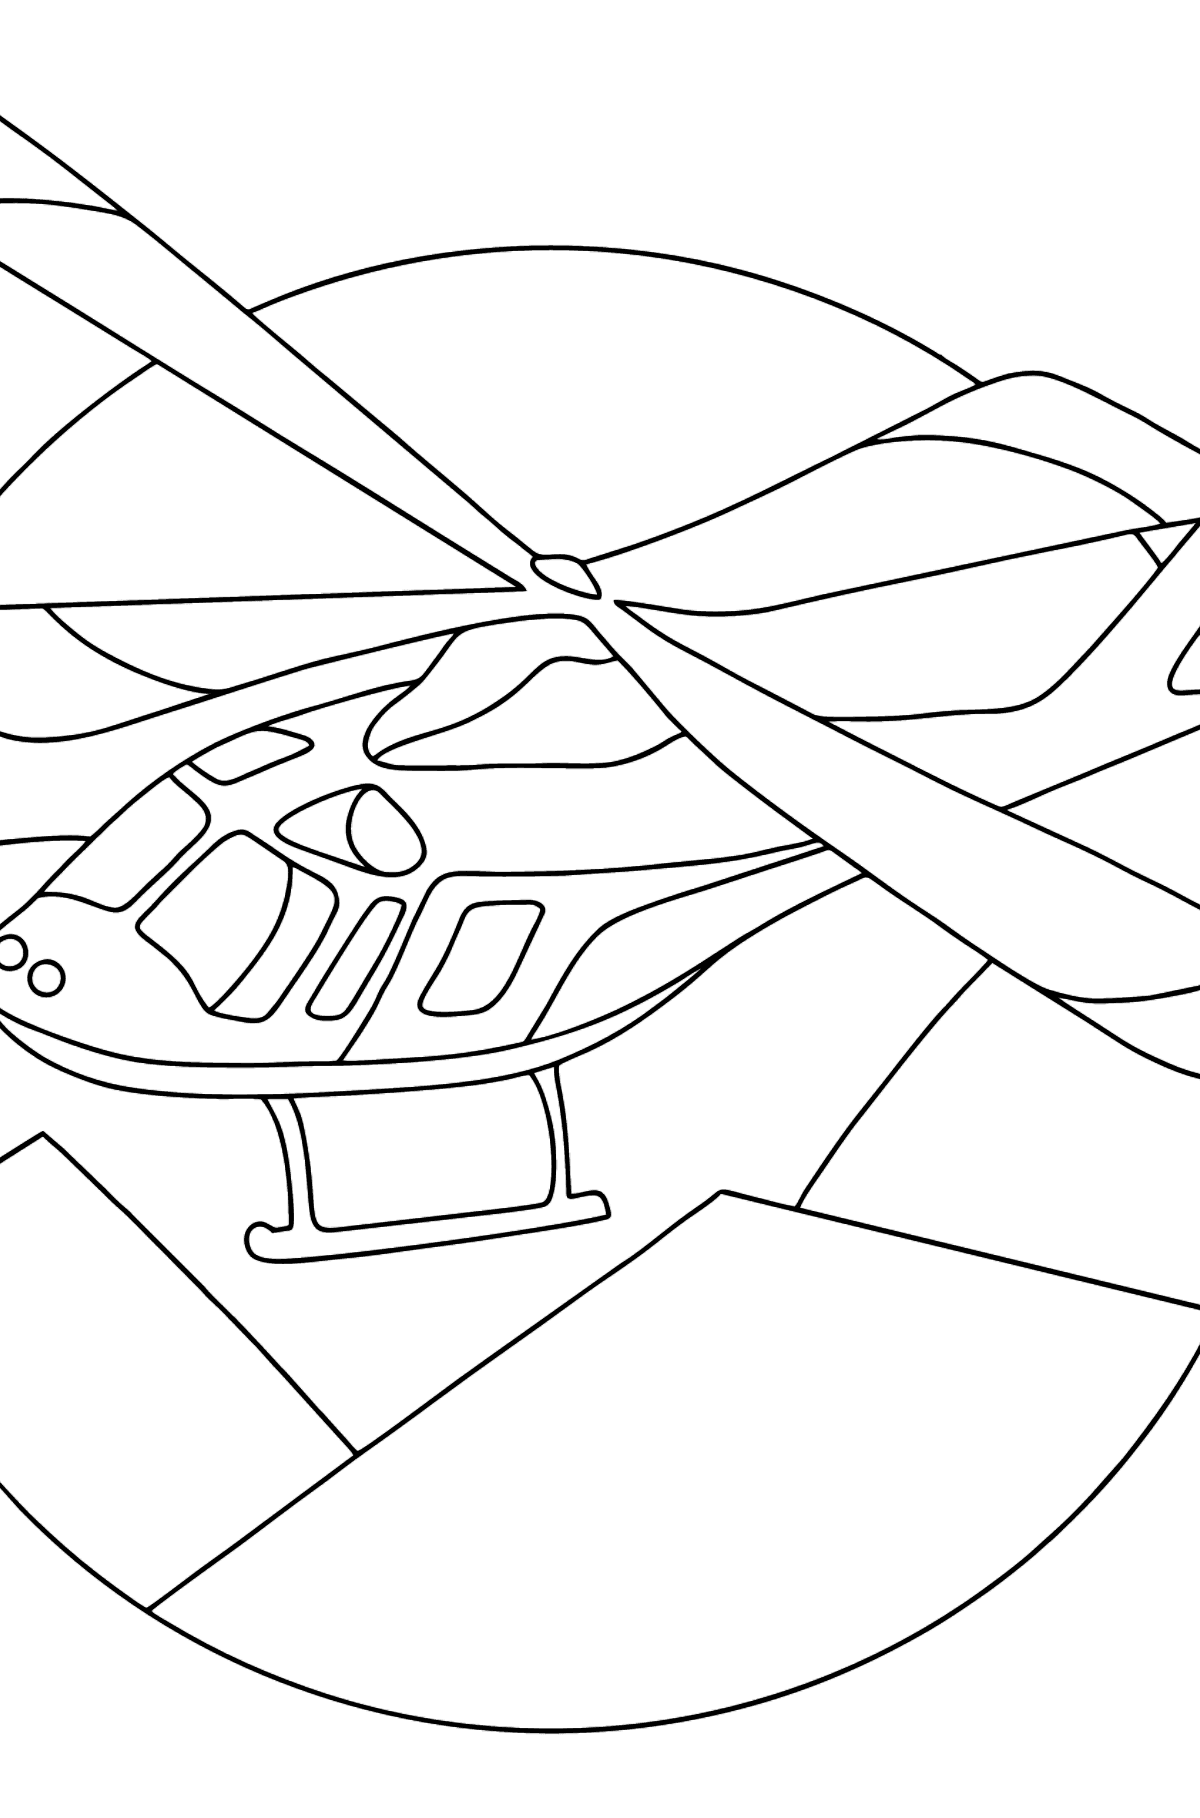 Dibujo para Colorear - Un Helicóptero Deportivo - Dibujos para Colorear para Niños